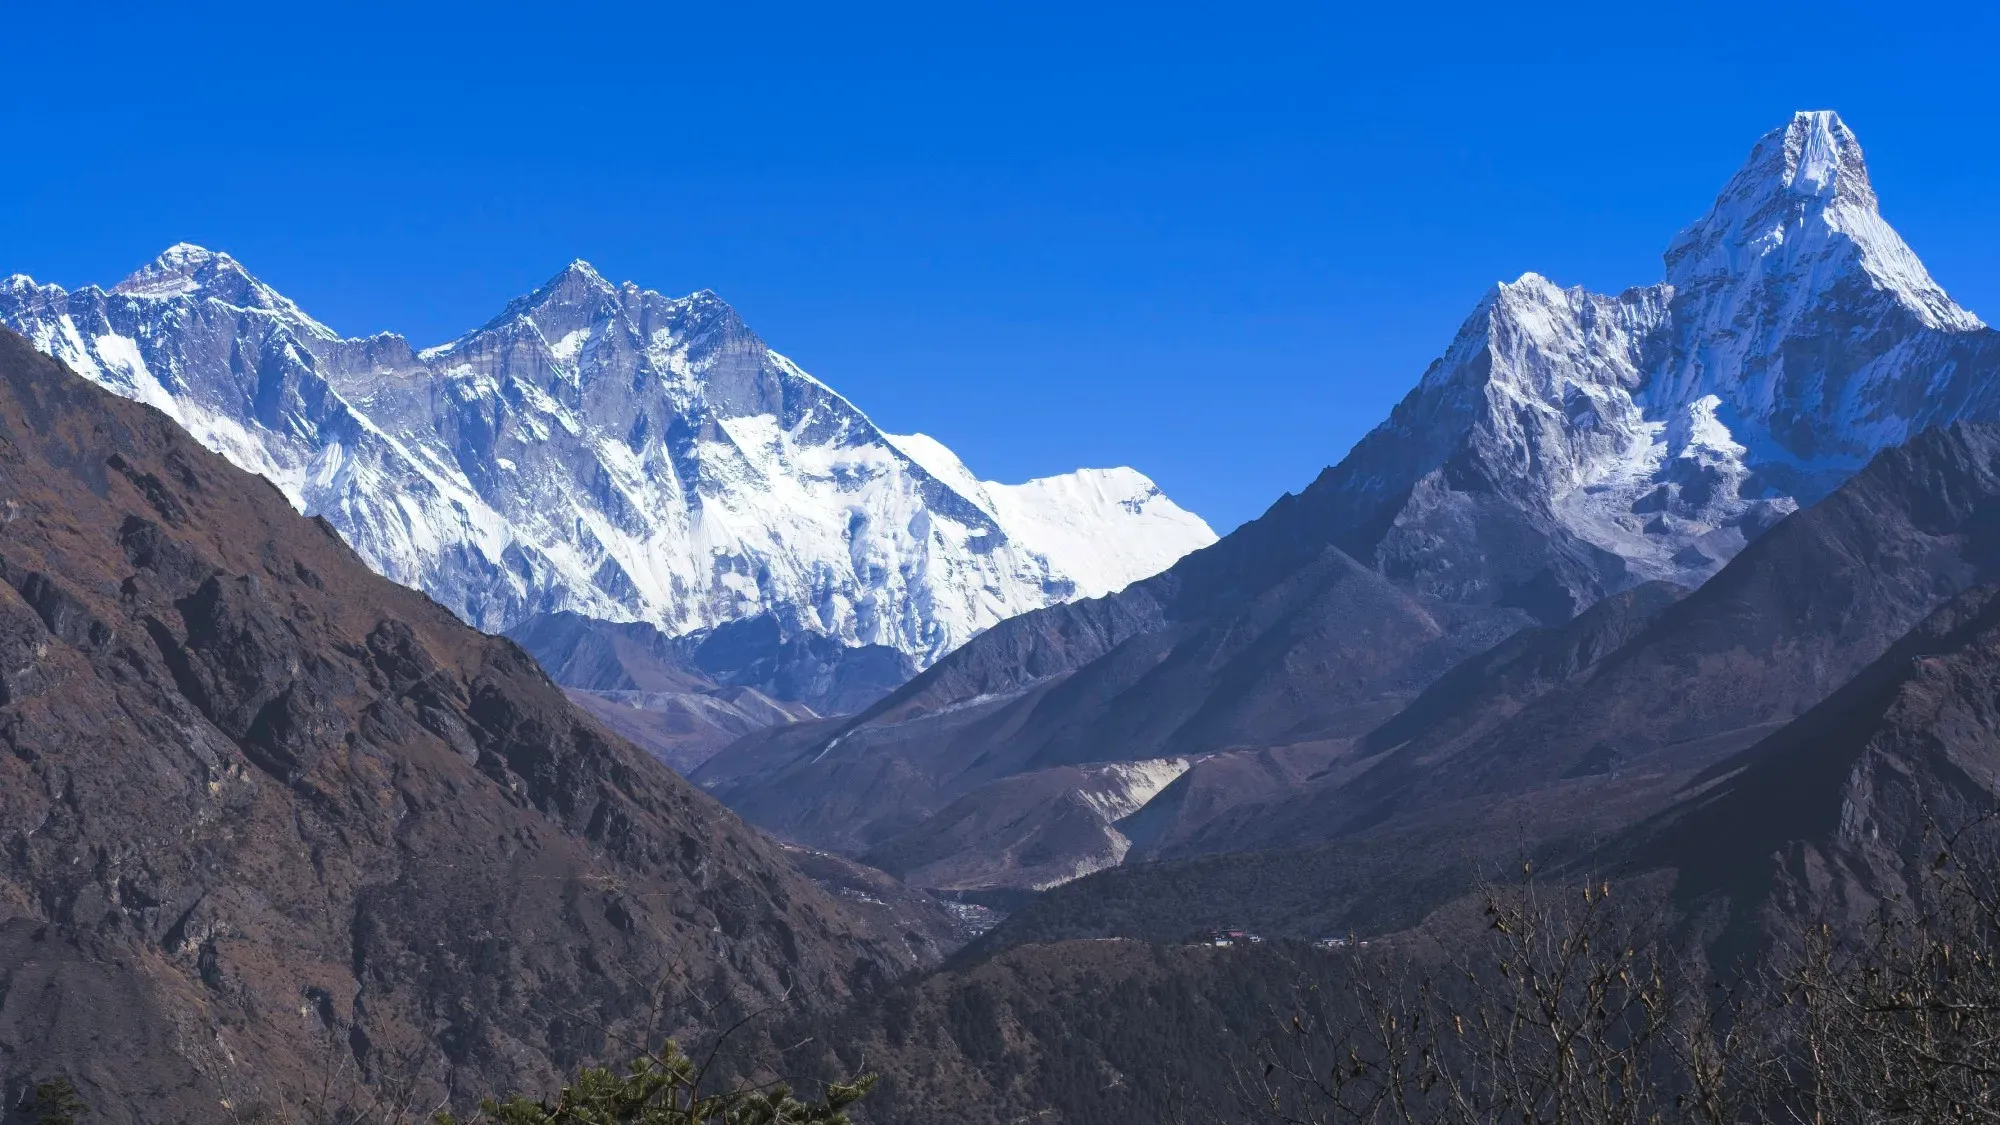 Lhotse, Mount Everest, and Ama Dablam's peaks